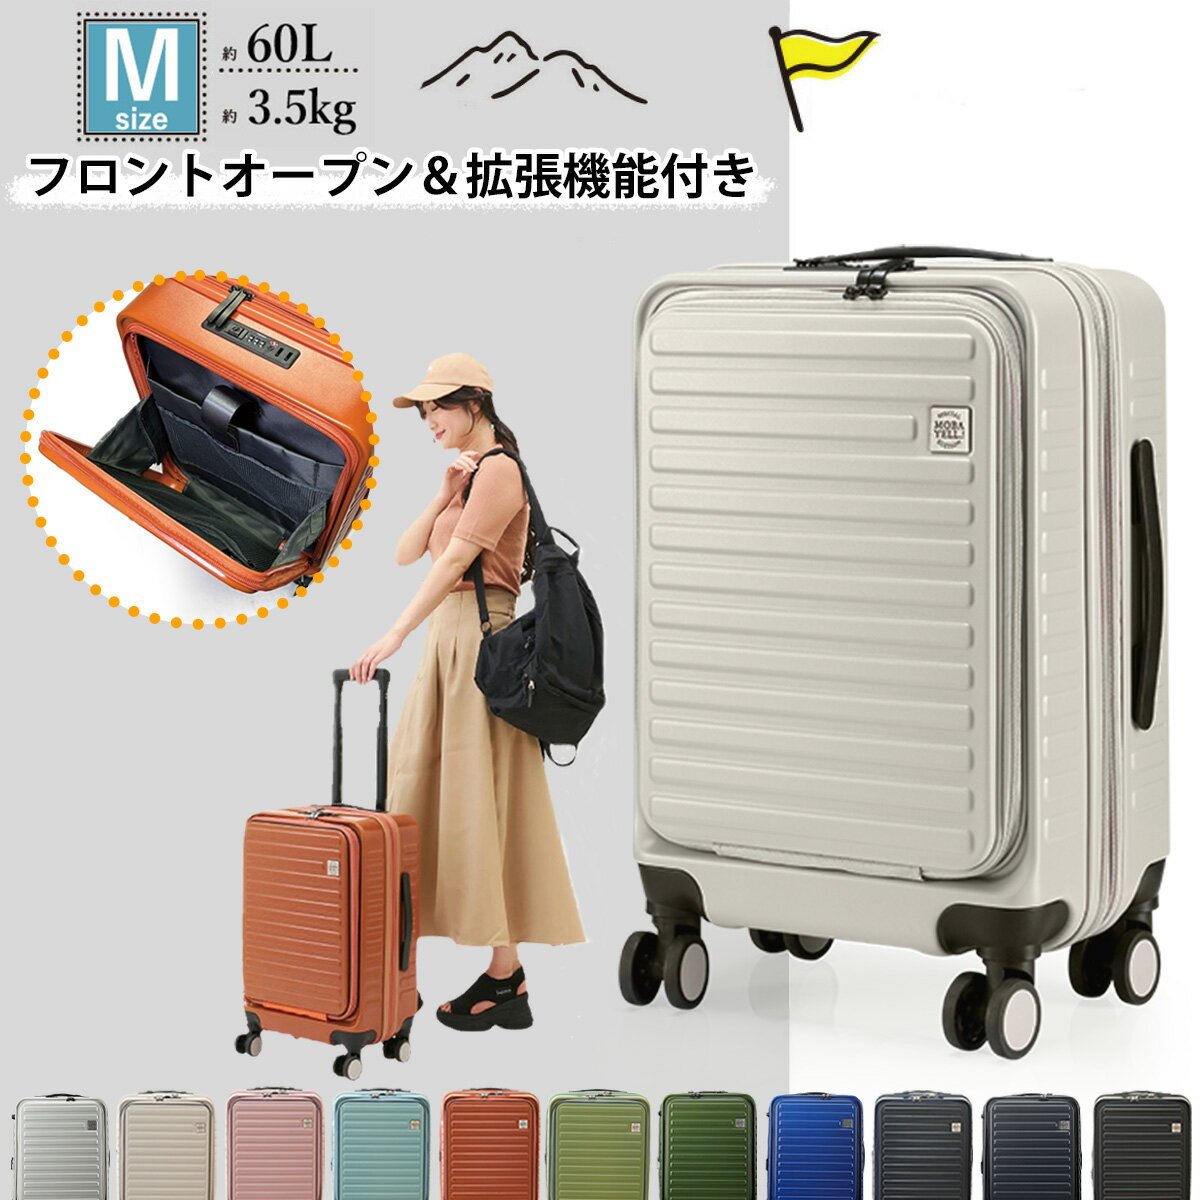 【55%OFF】 スーツケース キャリーケ